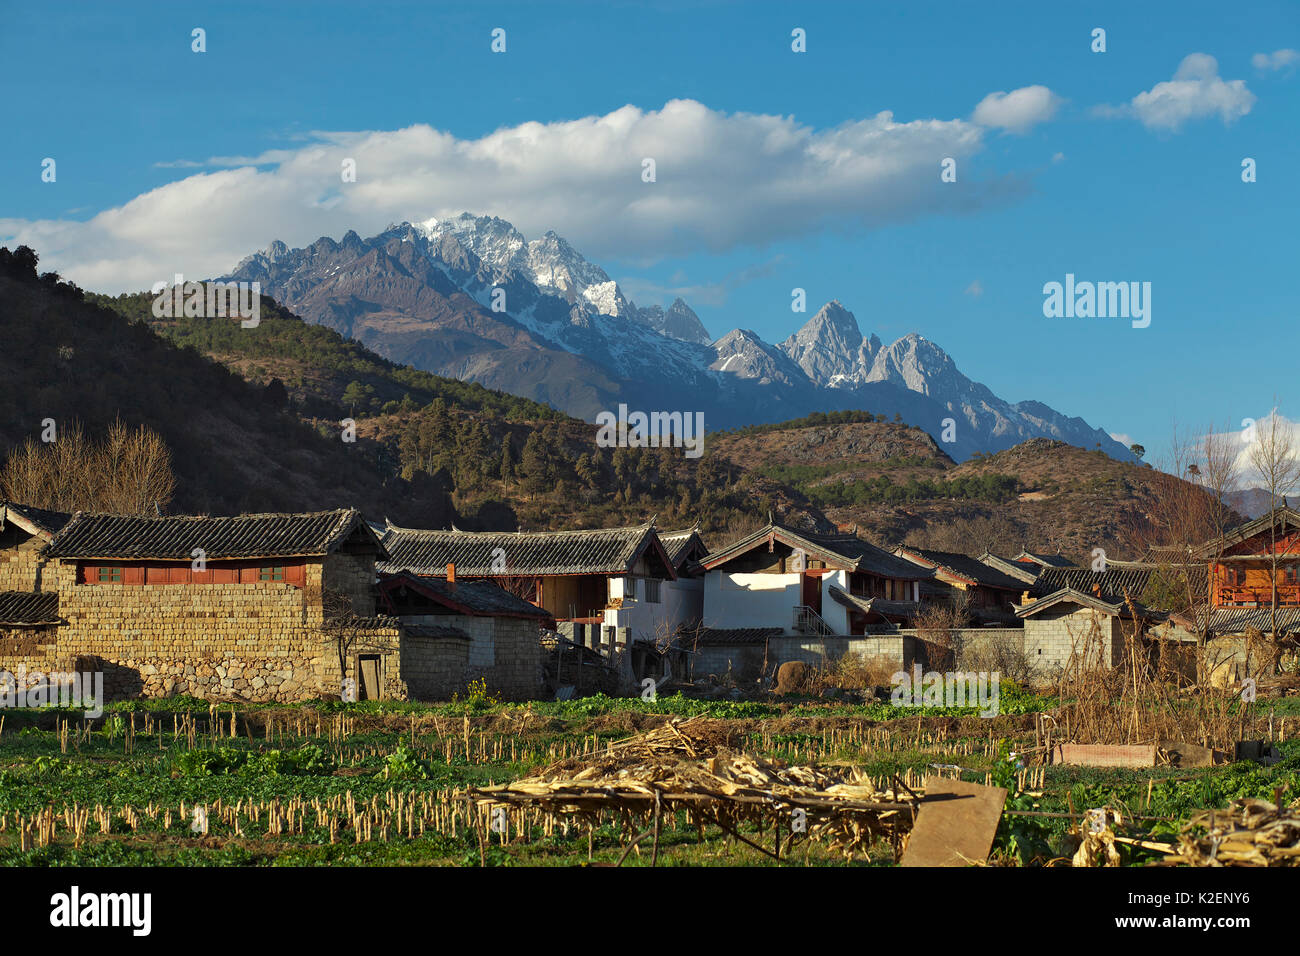 Paesaggio del villaggio e sulle montagne dal vicino lago Lashihai, Lijiang, nella provincia dello Yunnan in Cina. Gennaio 2012 Foto Stock